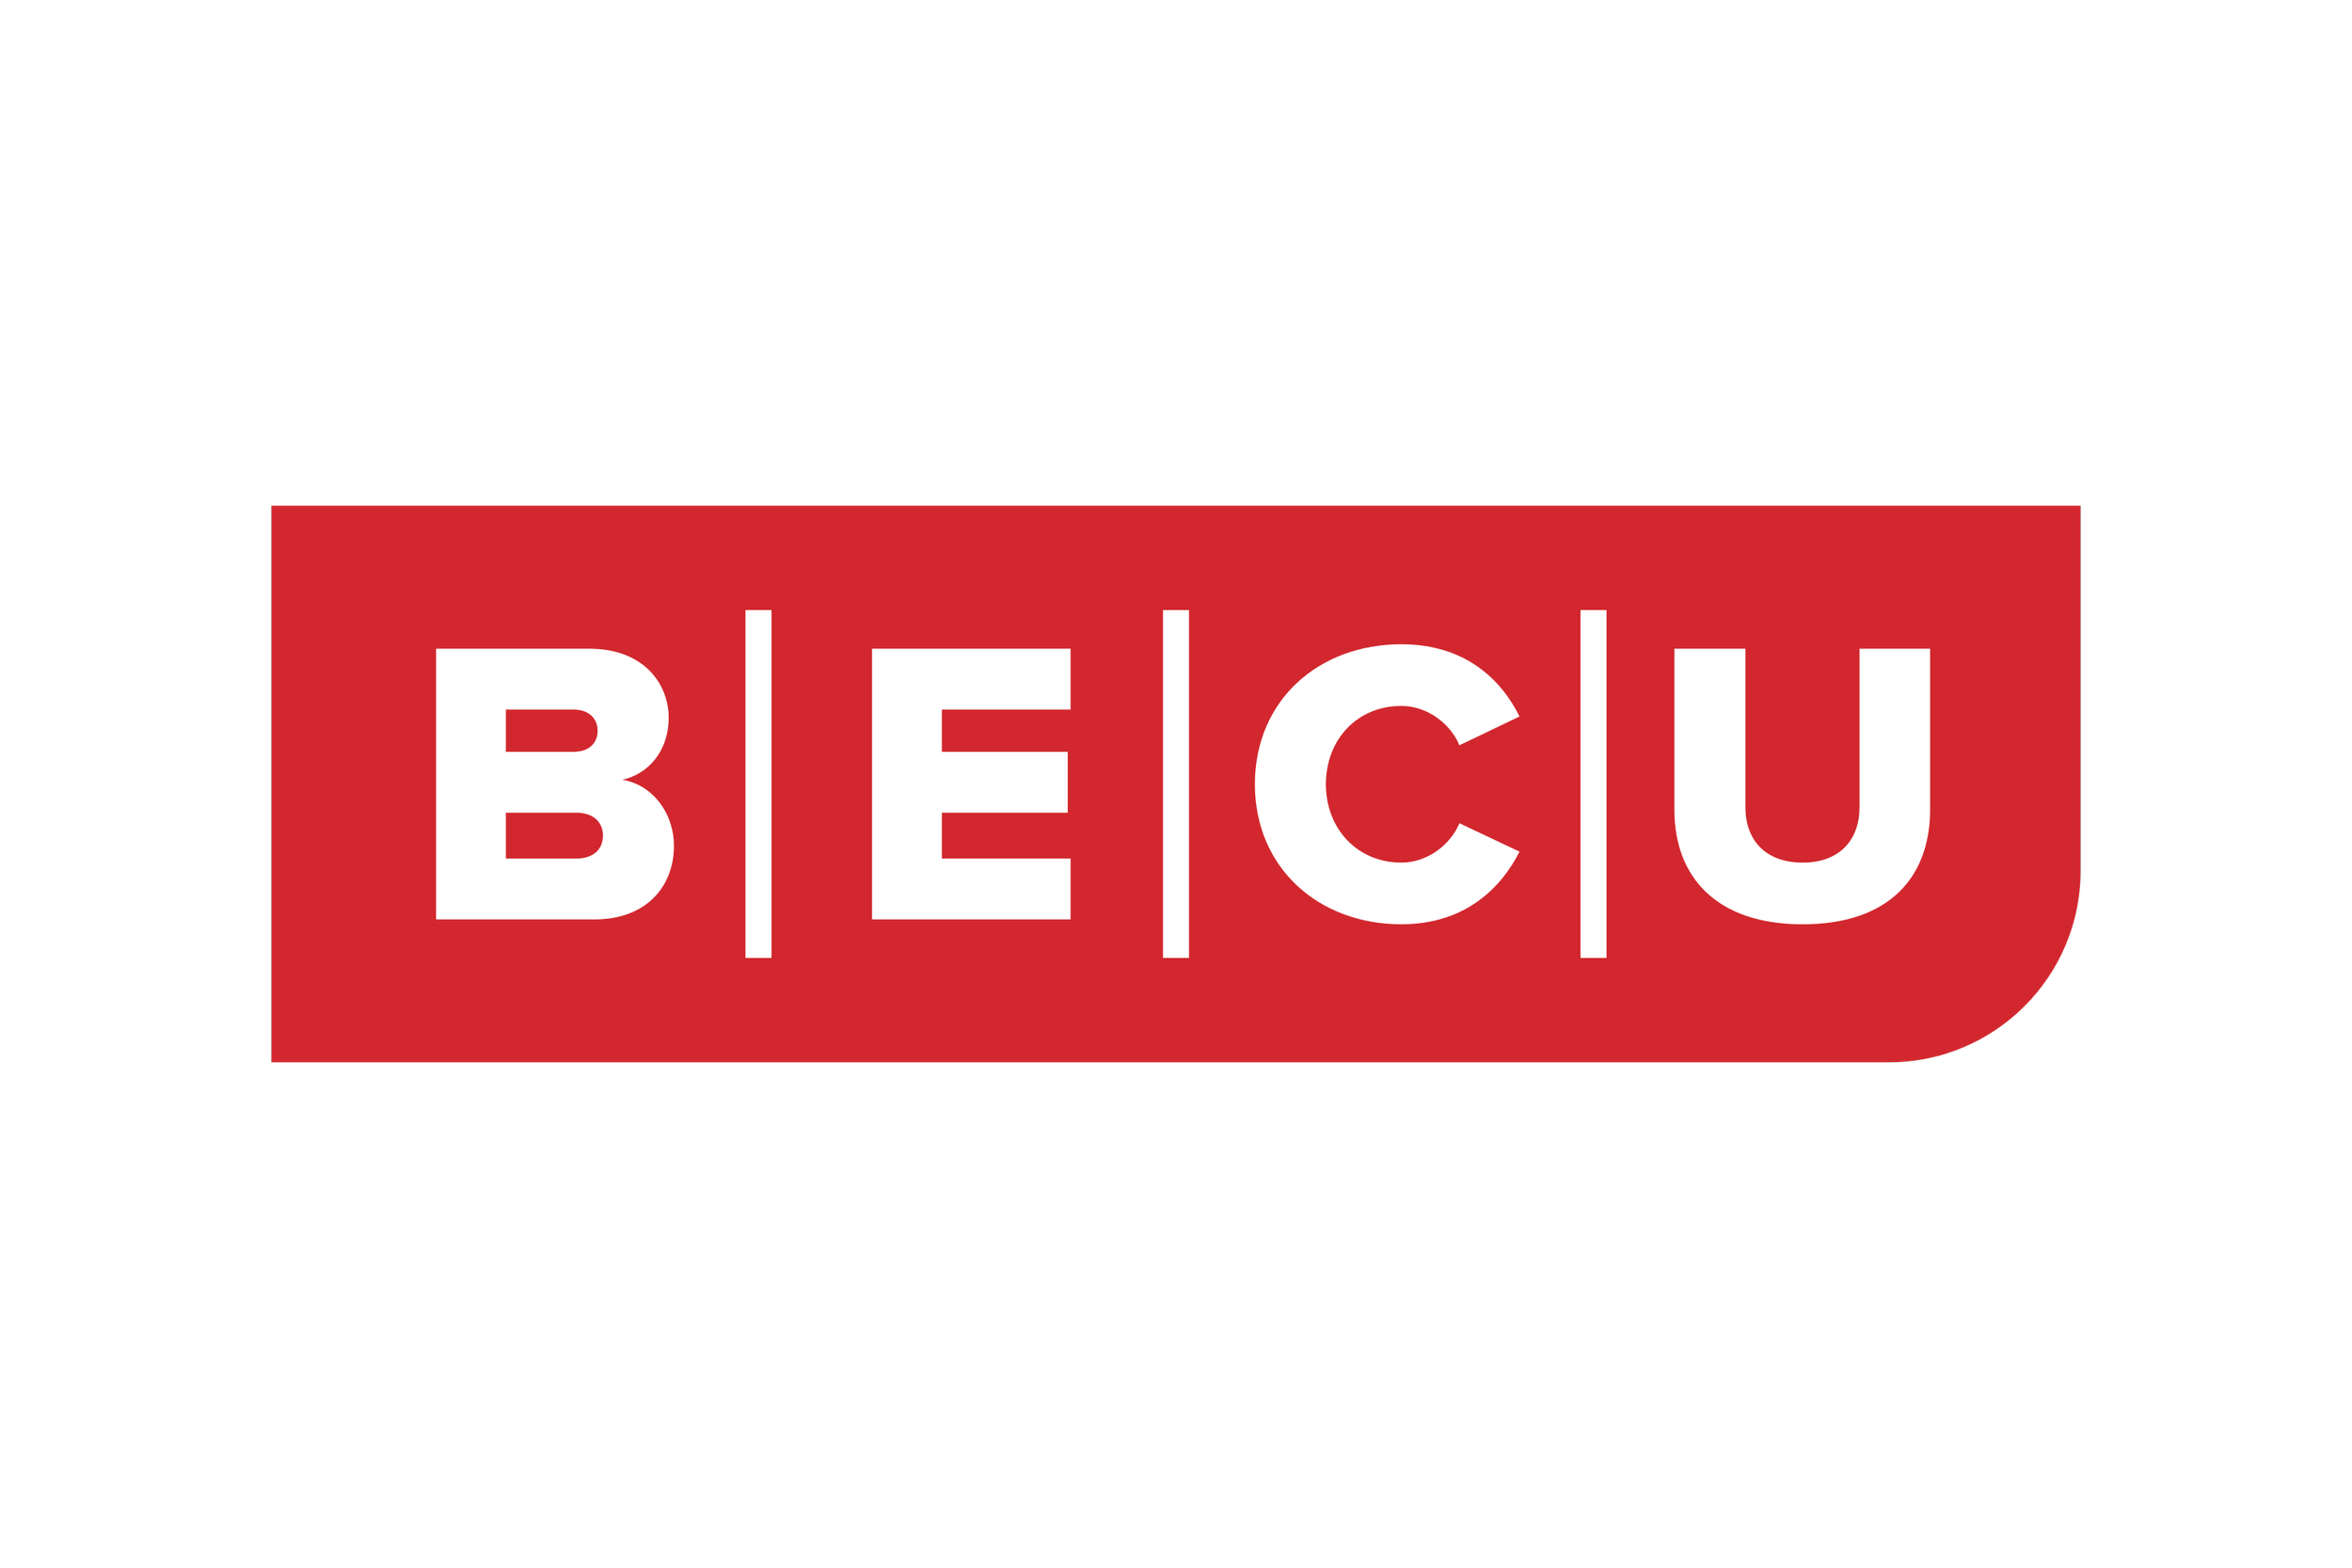 BECU-Logo.wine.png